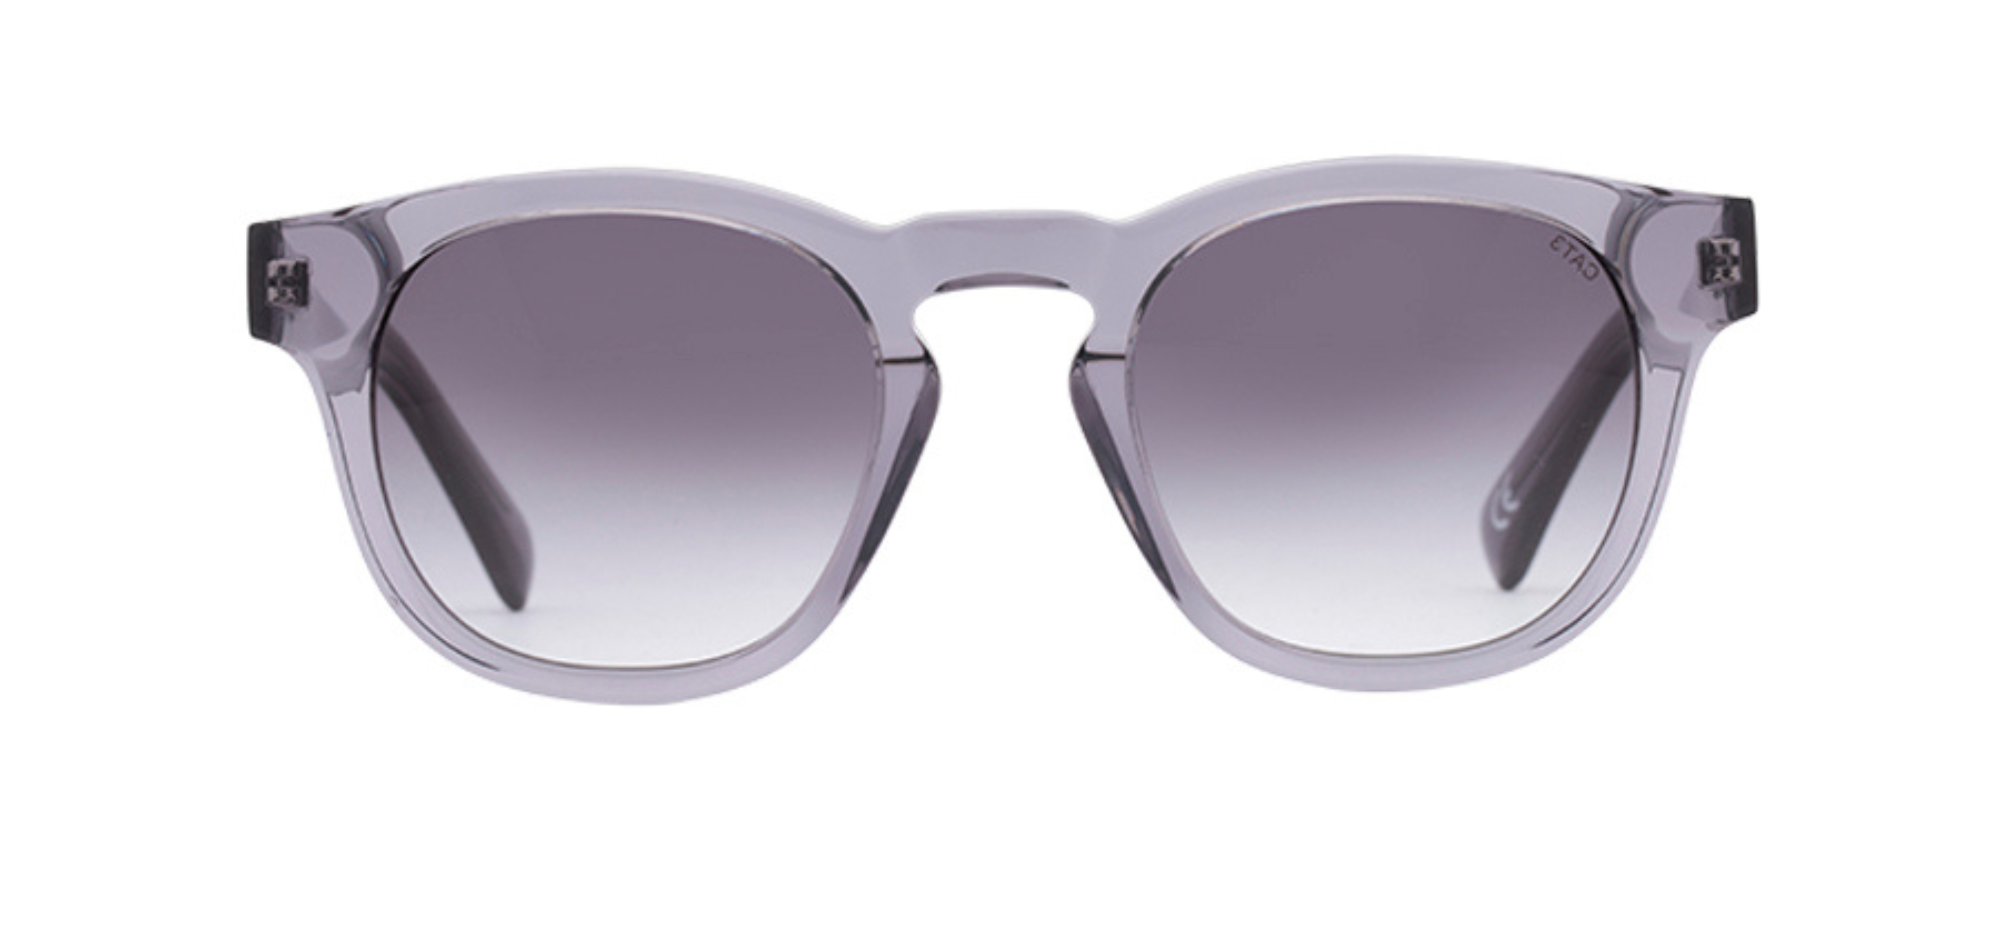 The Lawnmover - Non-Violence X Smarteyes solglasögon